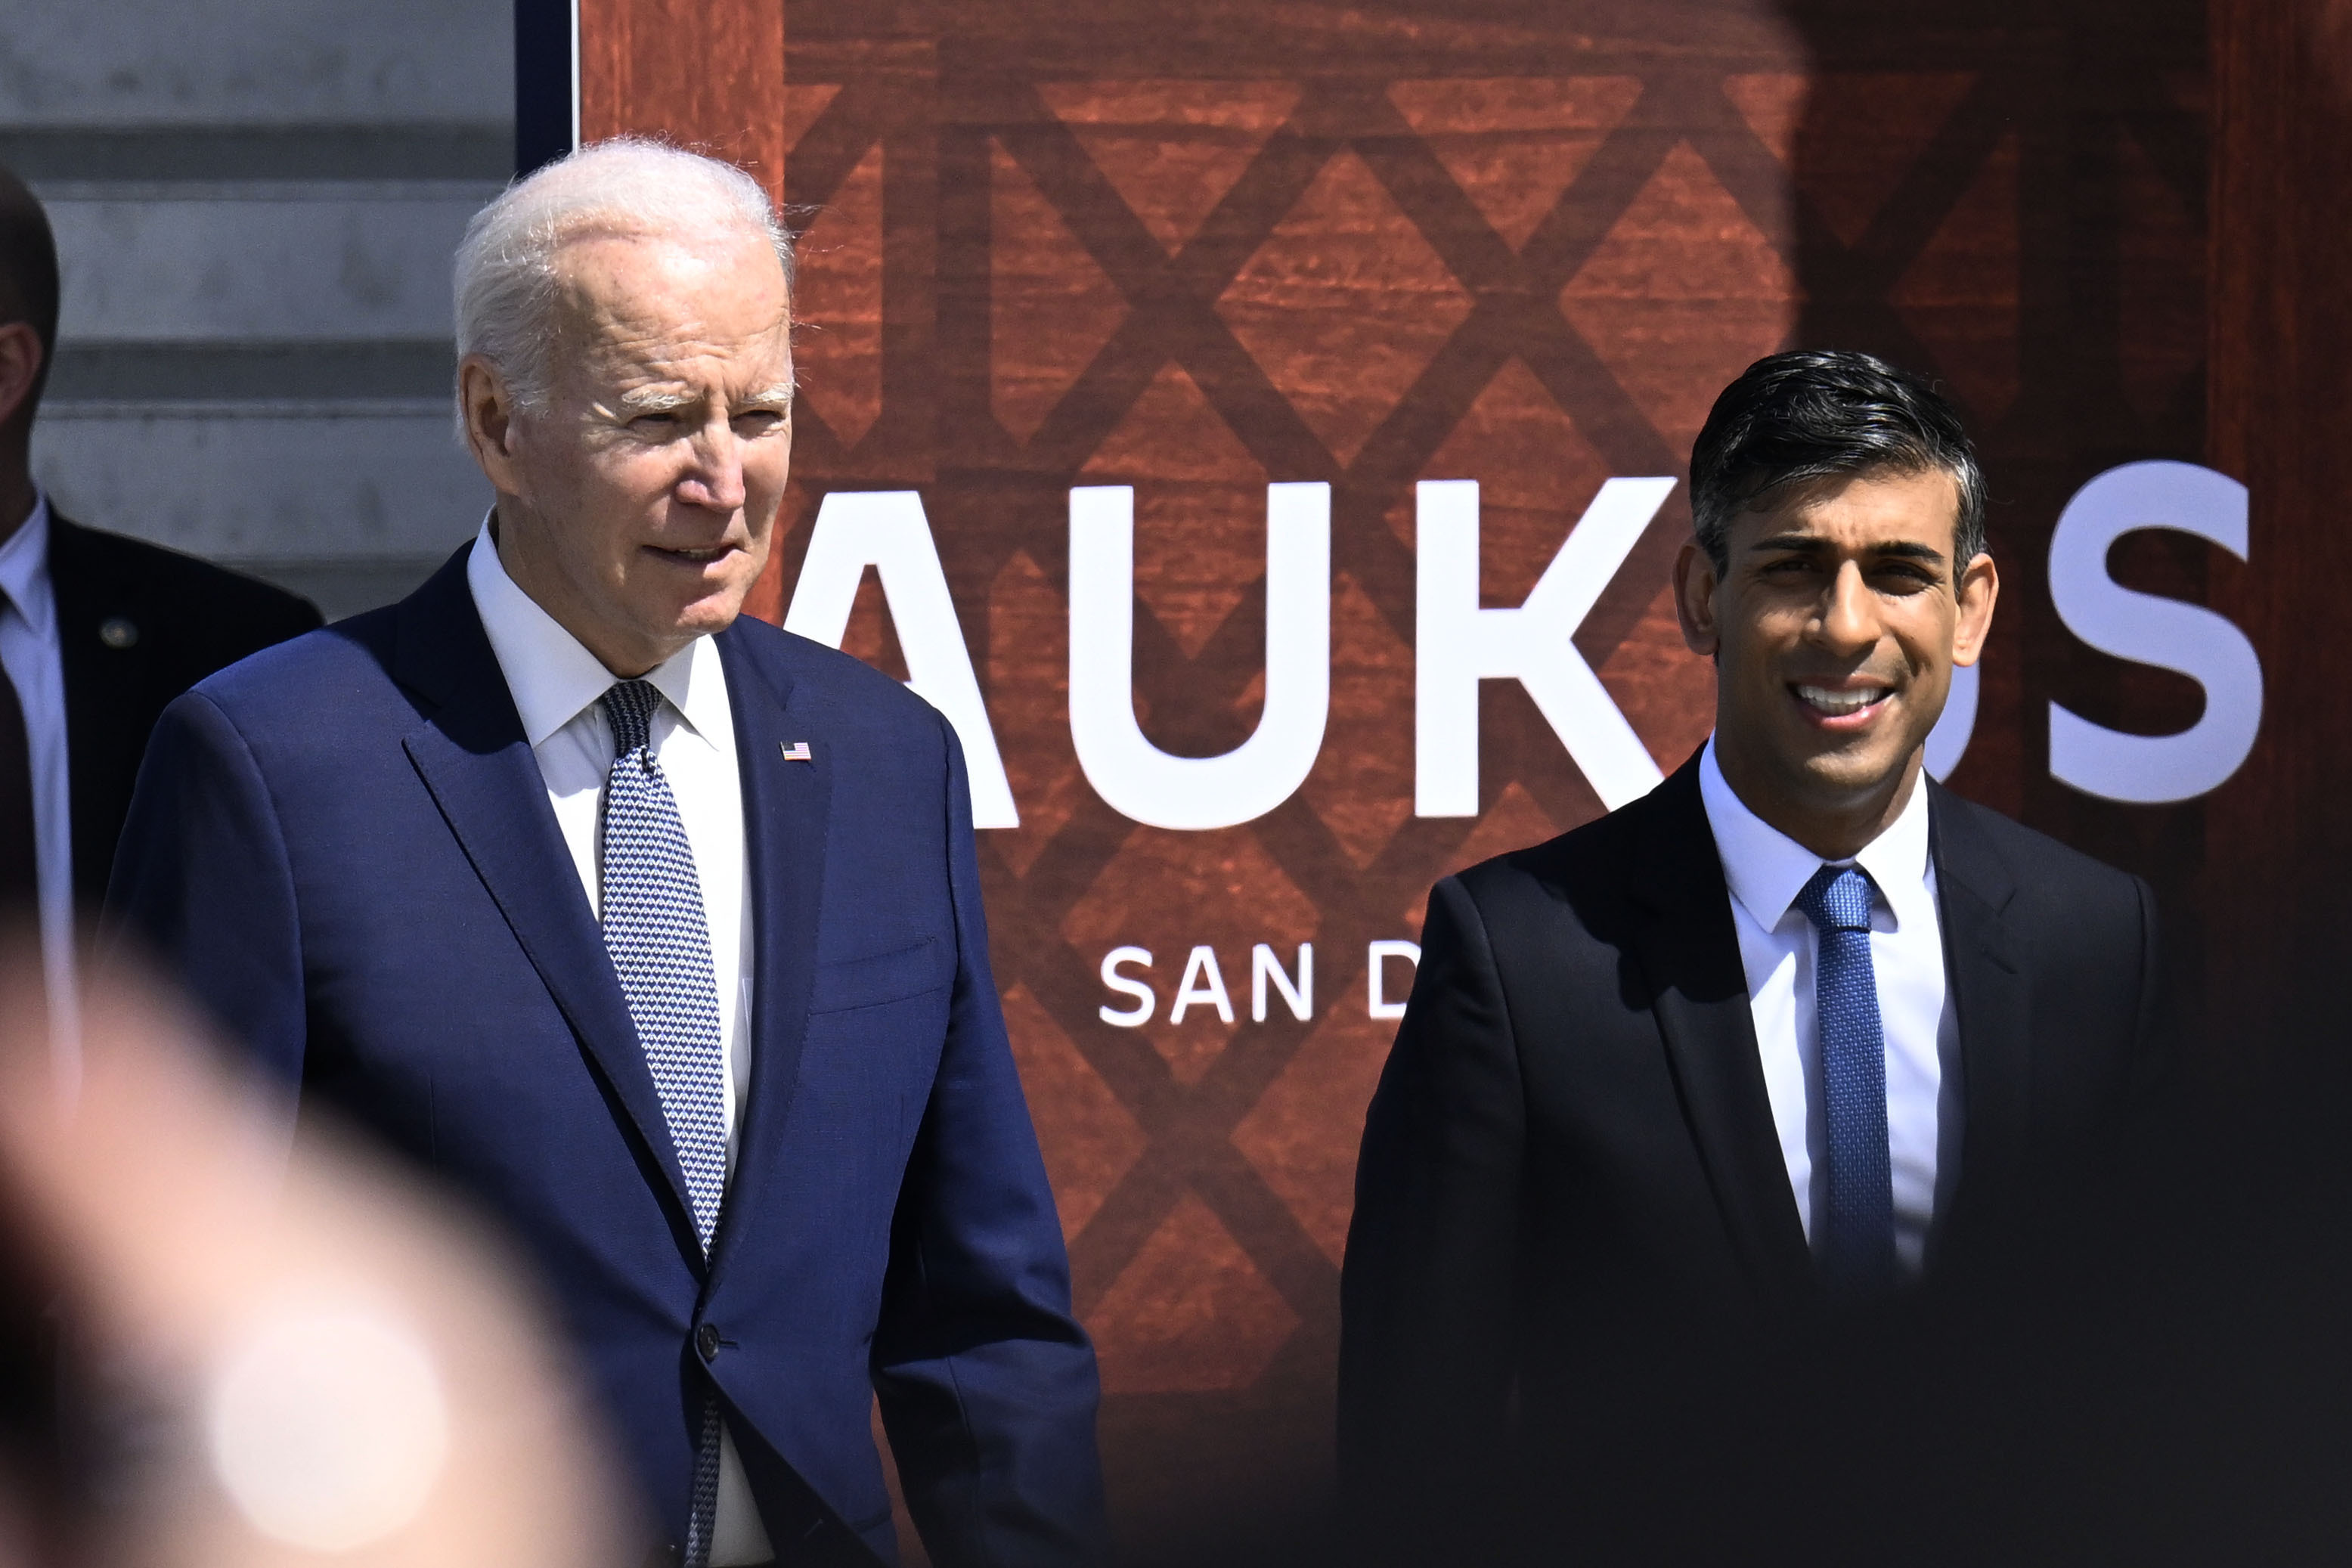 Joe Biden recibirá a Rishi Sunak en la Casa Blanca con el foco puesto en Ucrania y la economía